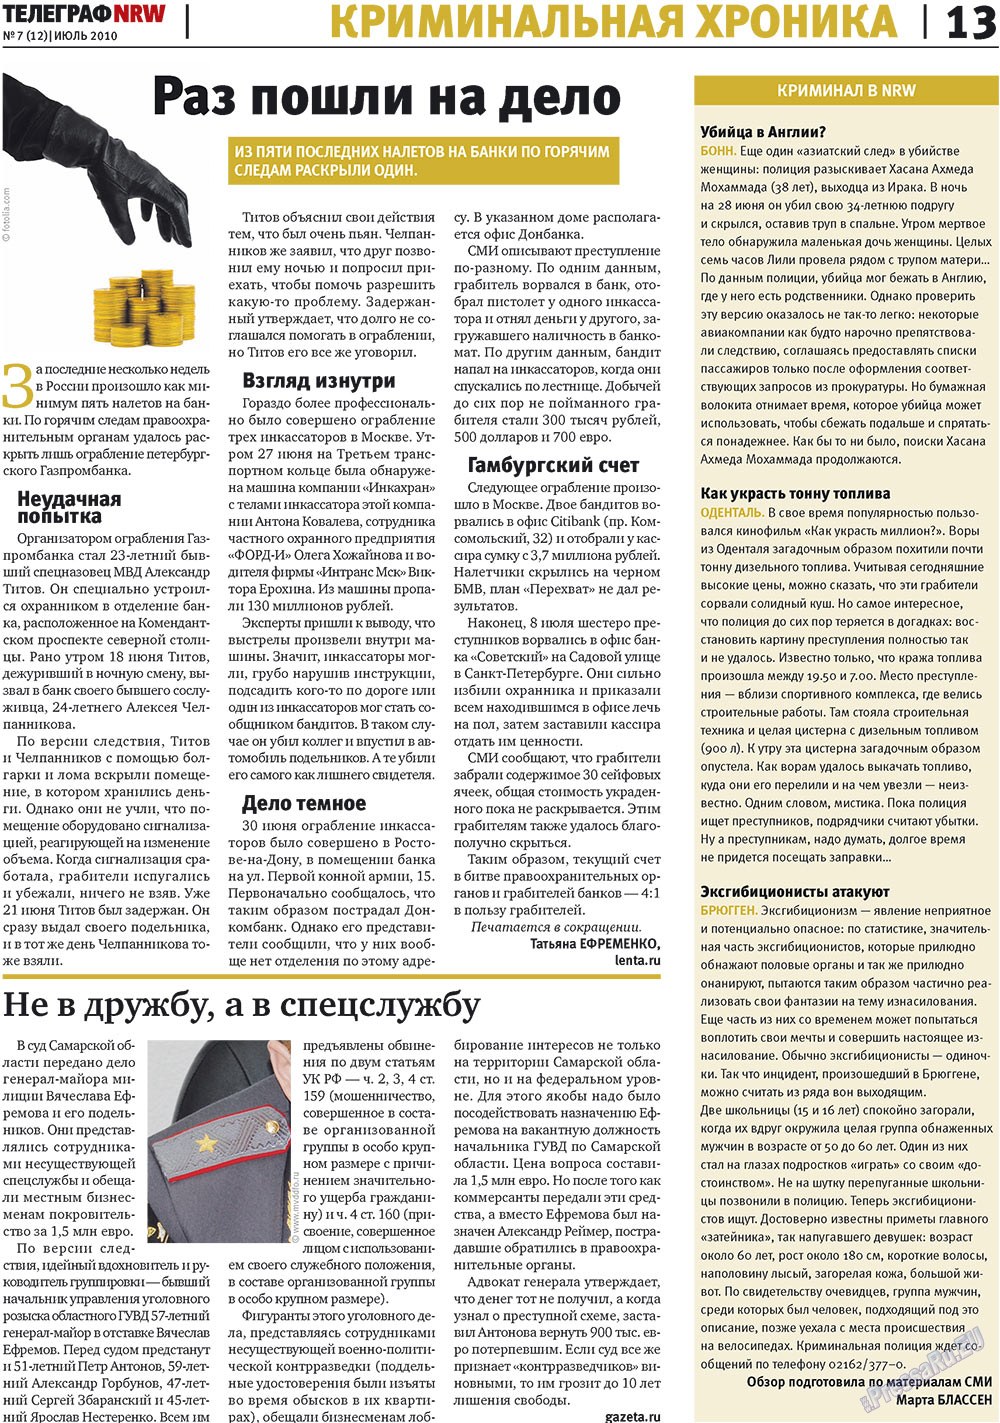 Телеграф NRW (газета). 2010 год, номер 7, стр. 13